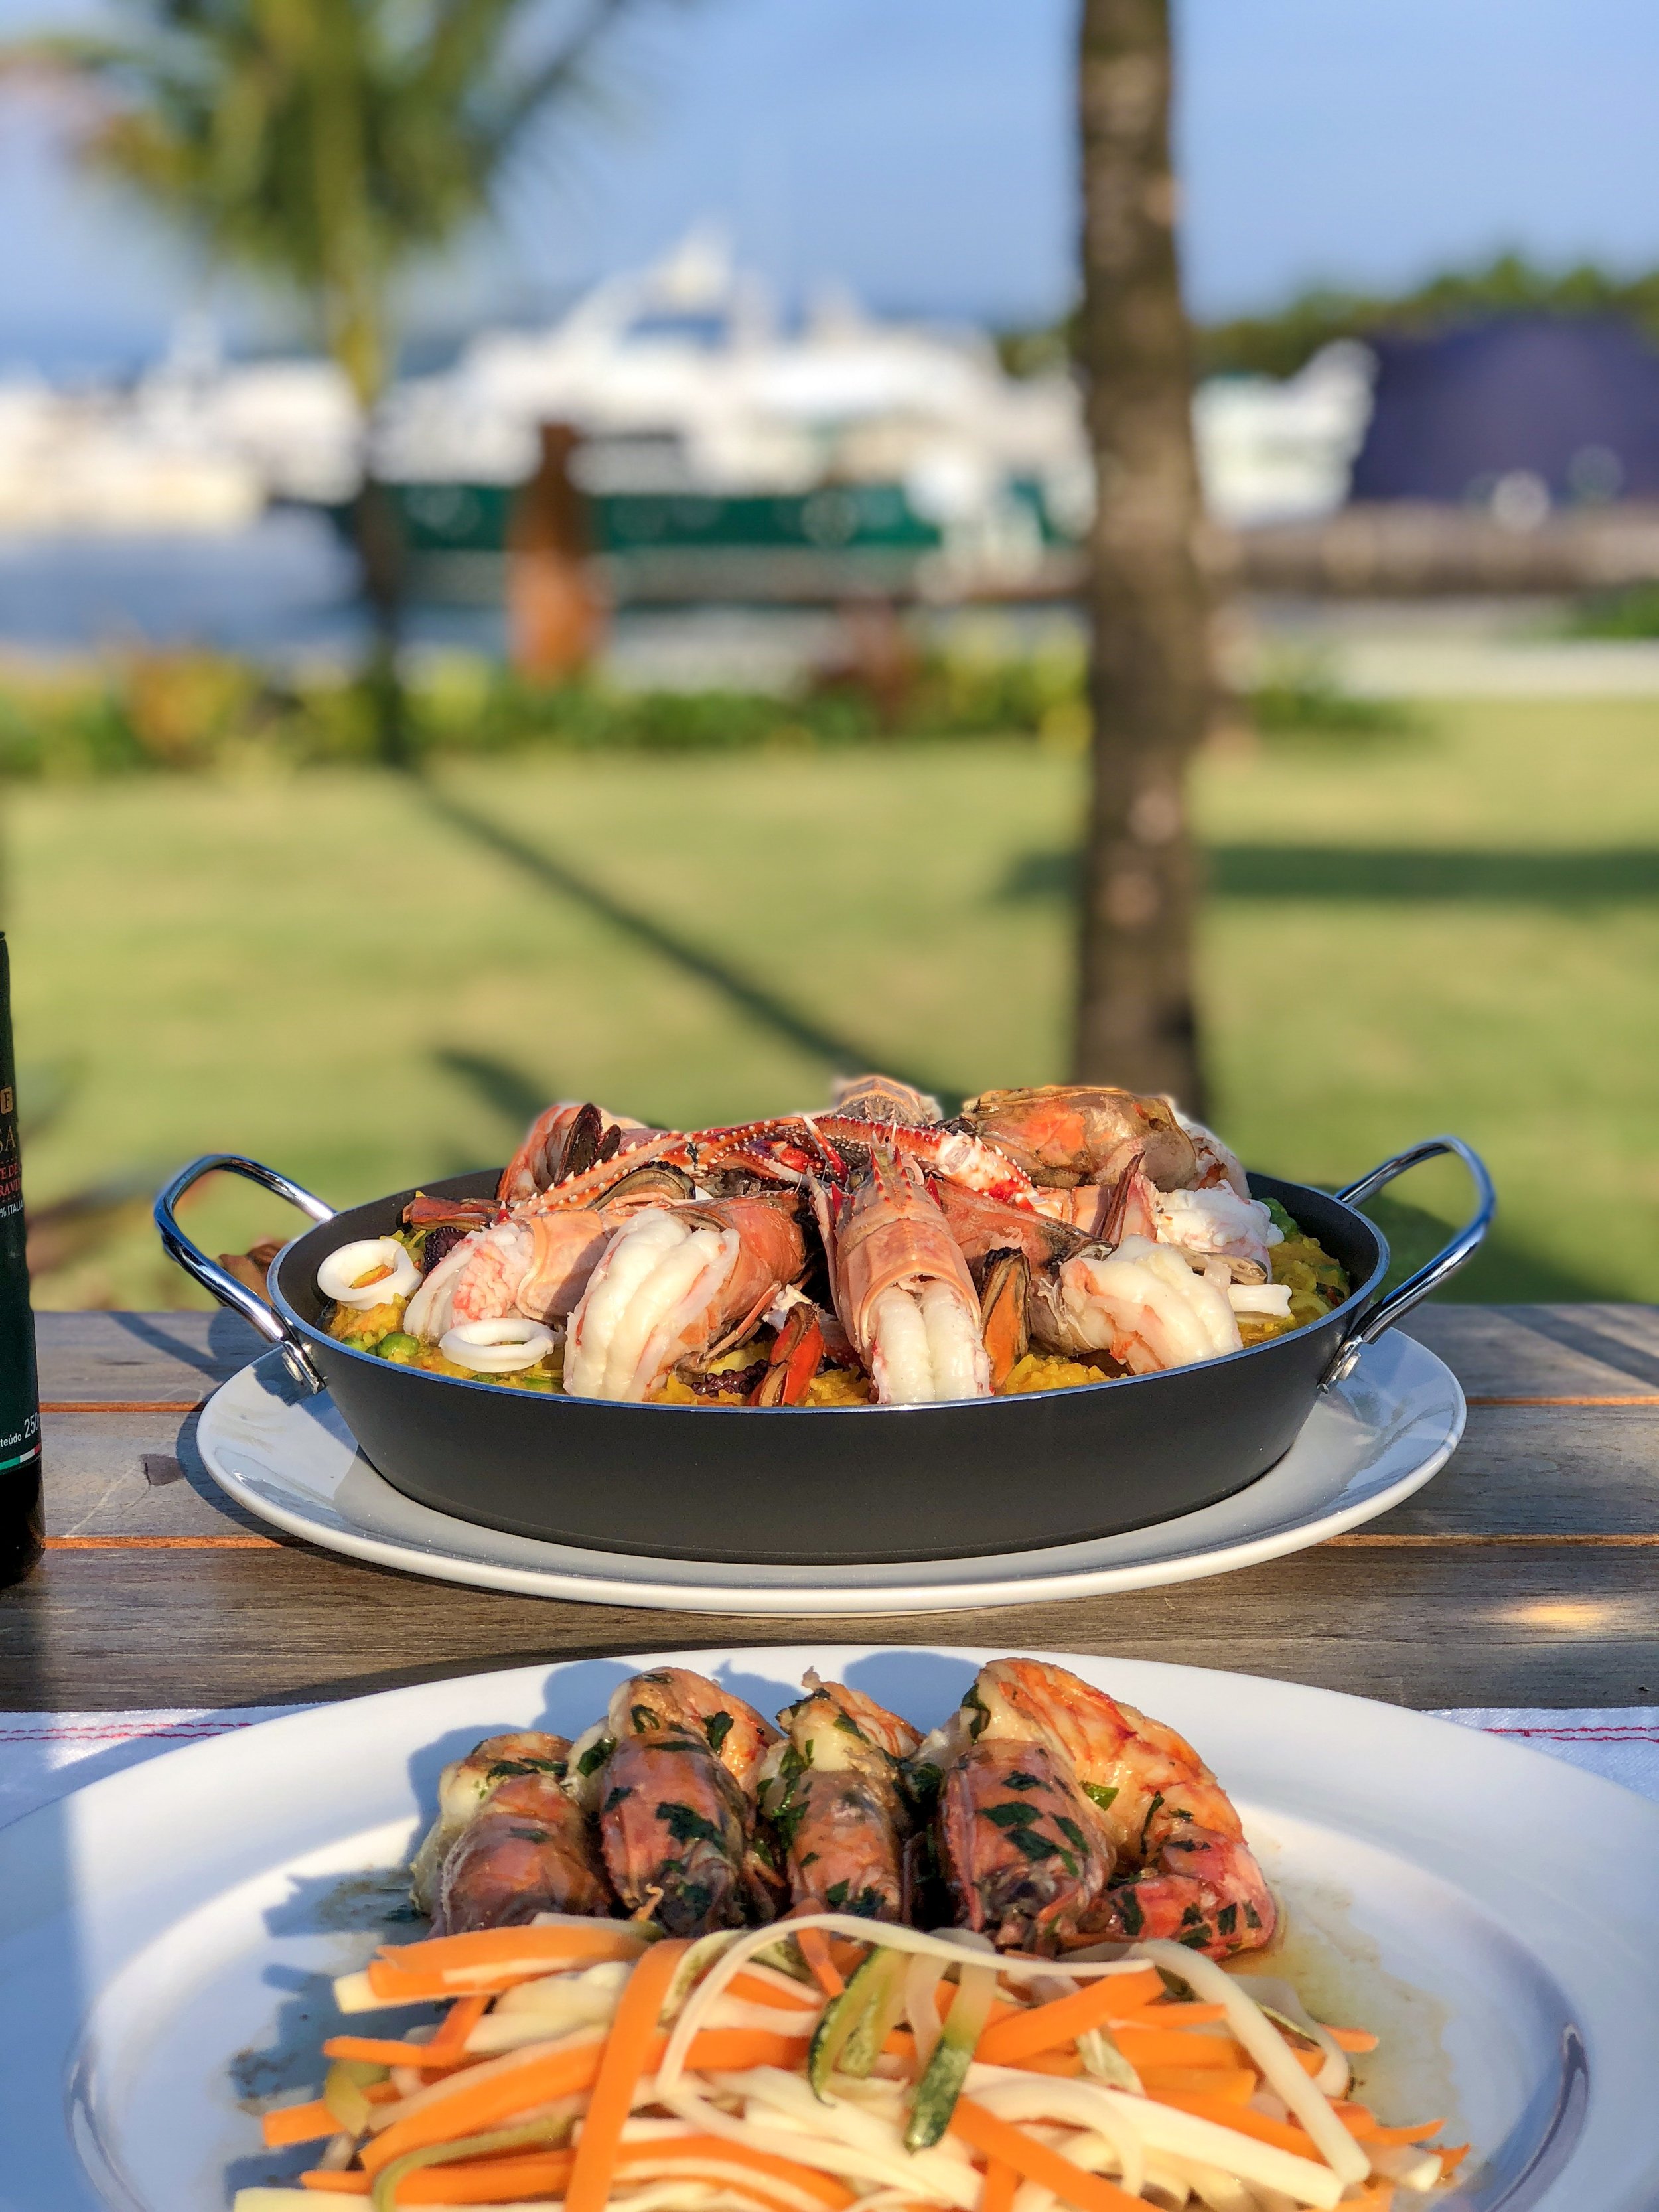  O Fasano Angra dos Reis tem dois restaurantes. O restaurante Praia e o Crudo: o primeiro com menu italiano e o segundo especializado em frutos do mar. 